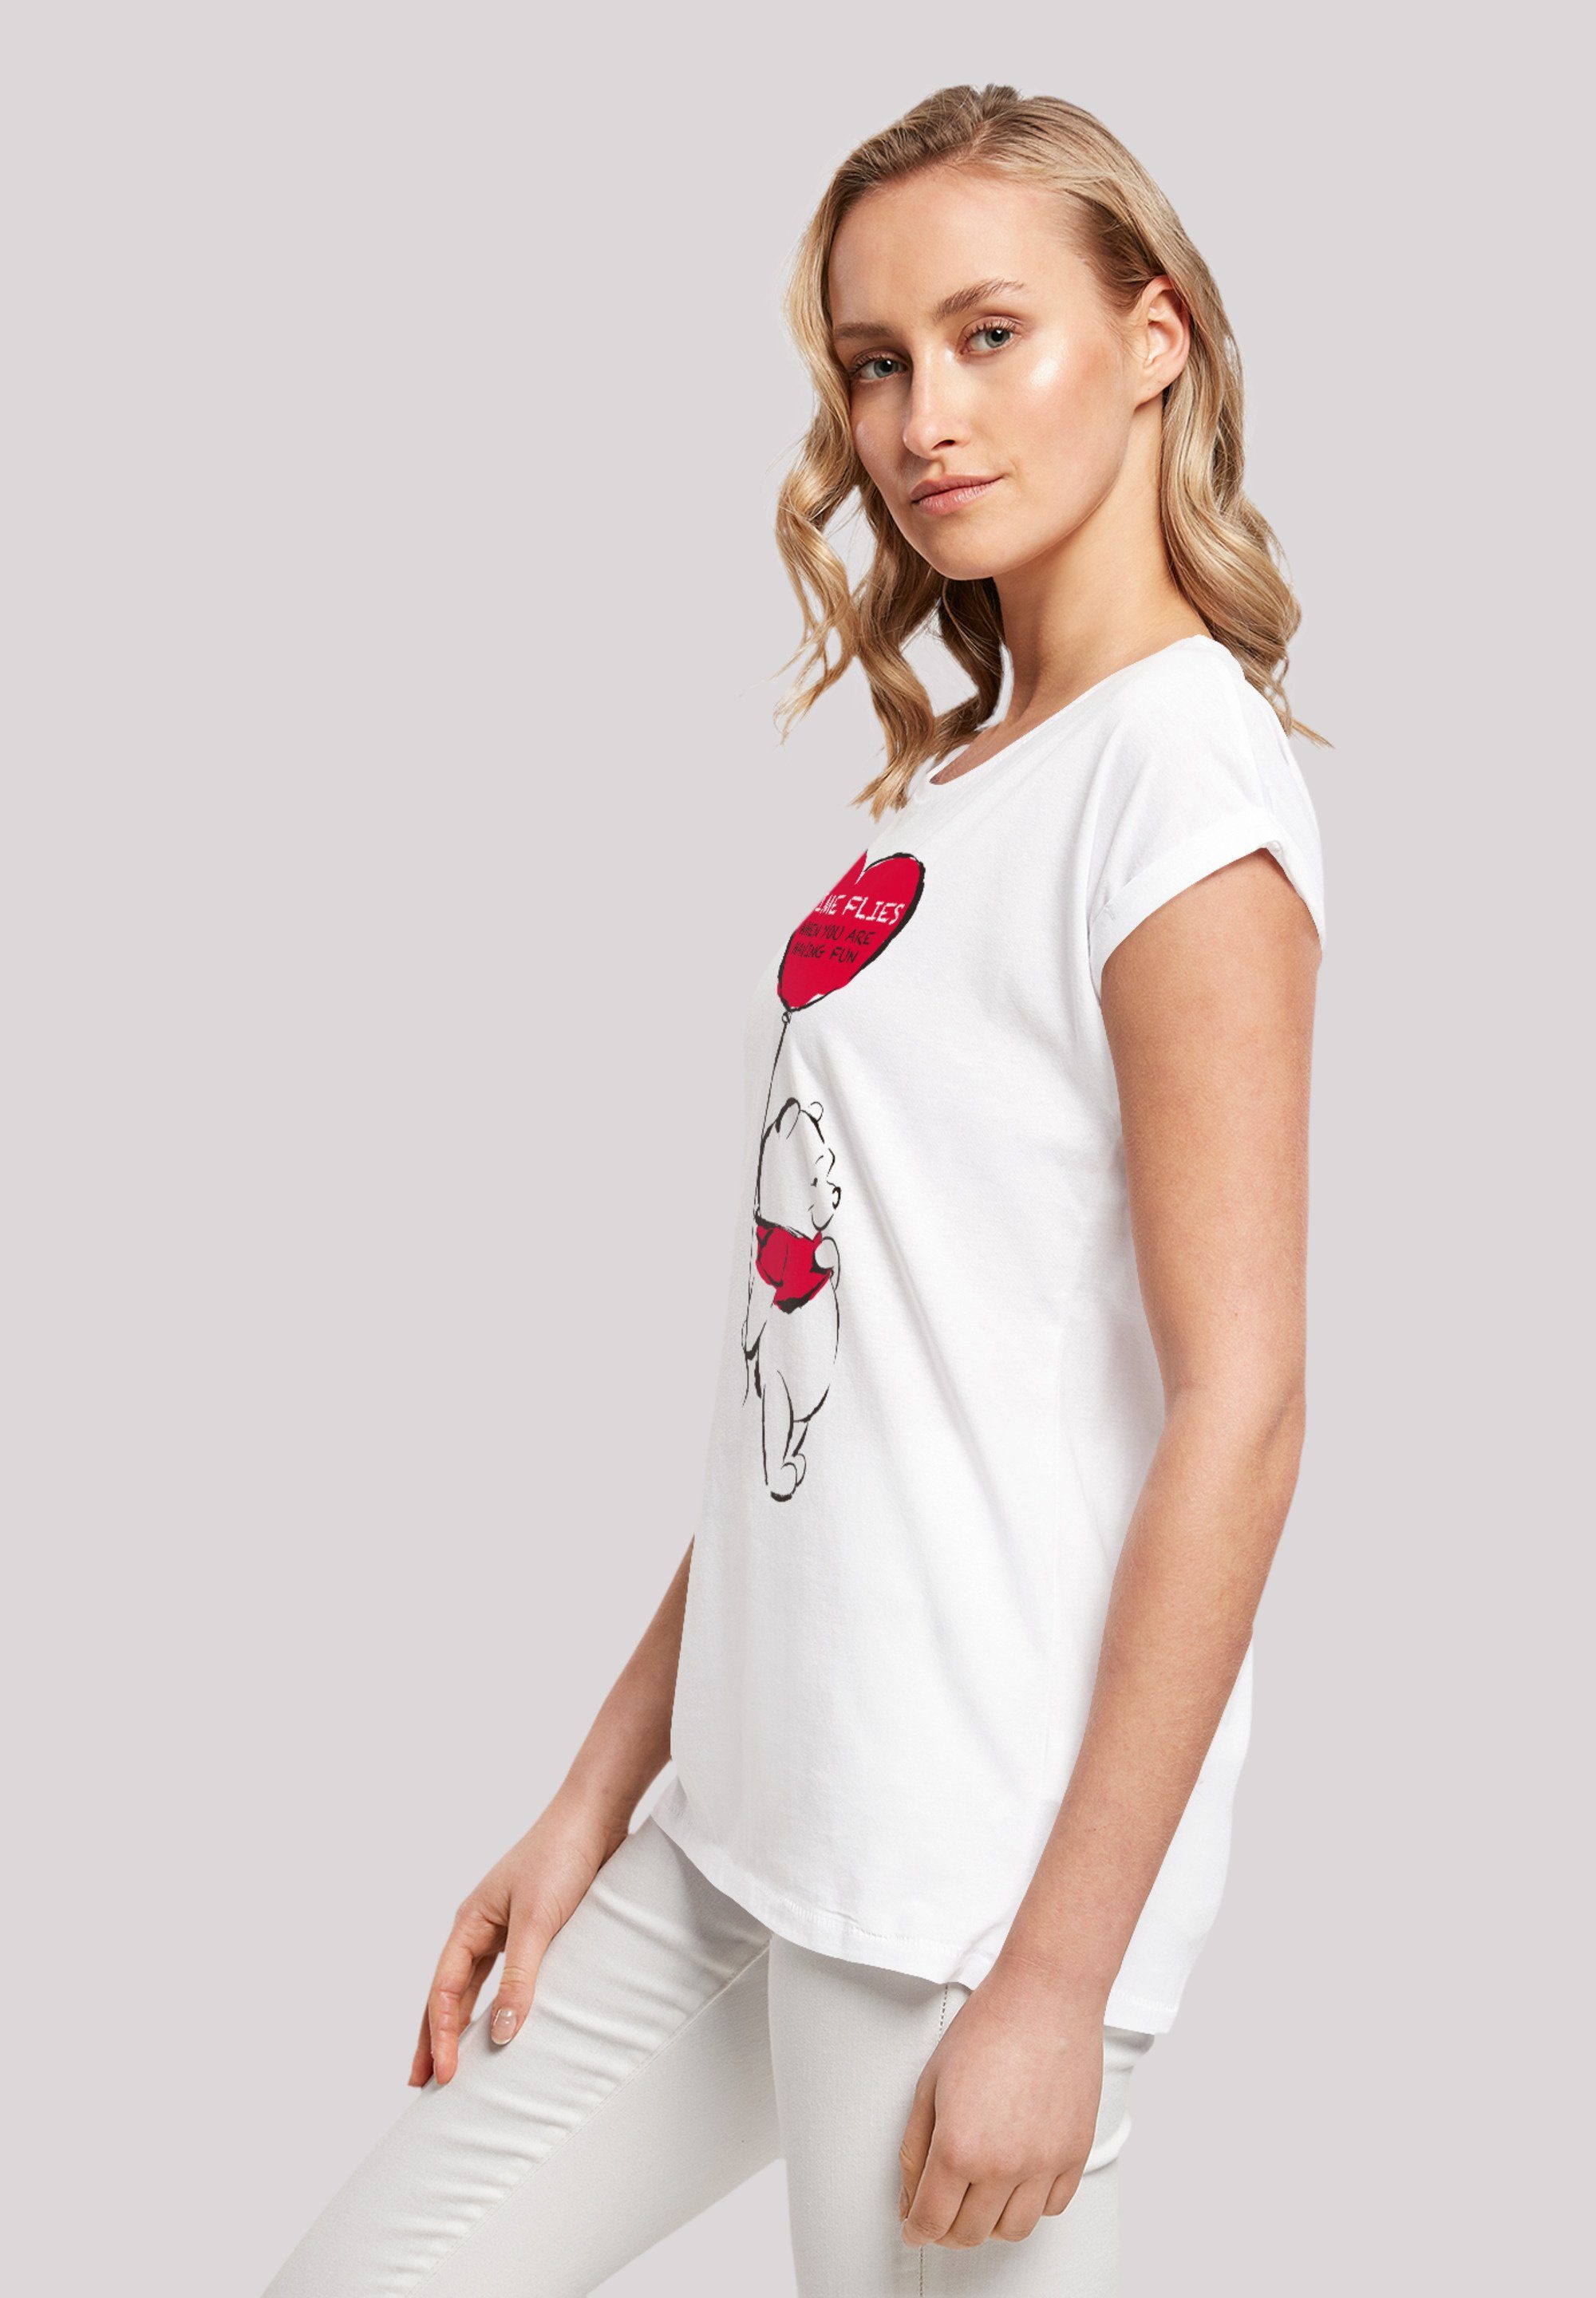 Time T-Shirt Premium Puuh Disney Winnie Flies F4NT4STIC Qualität